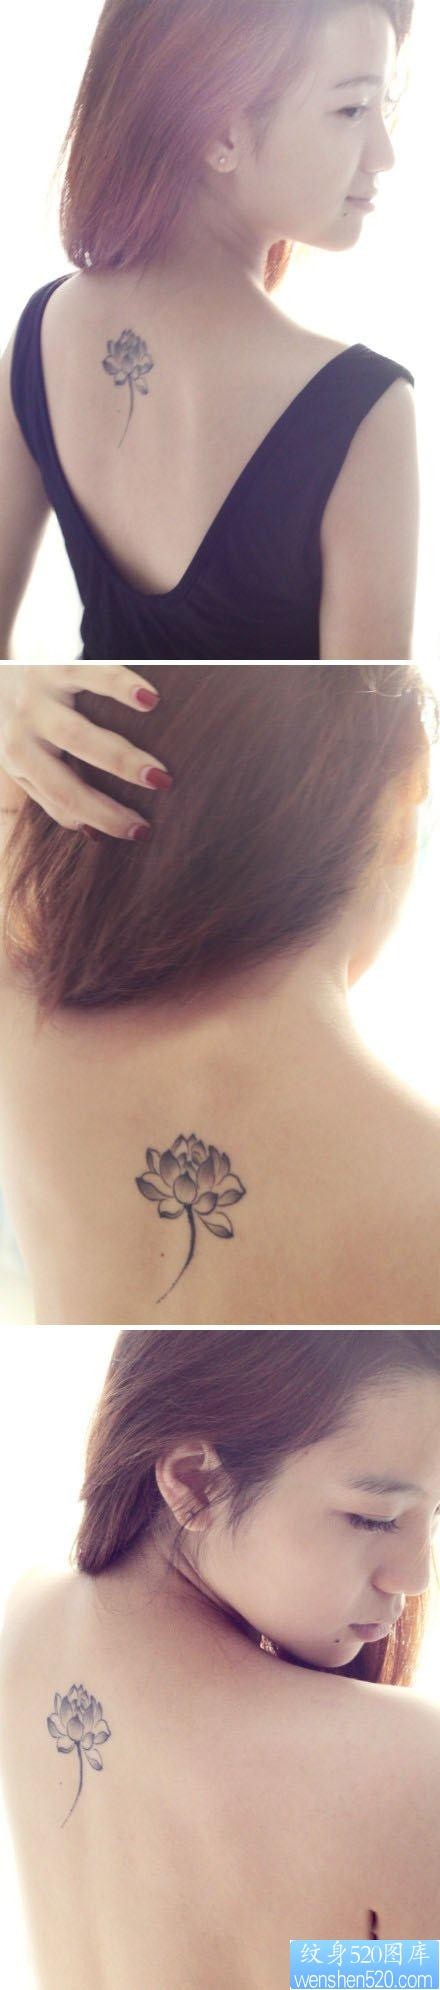 美女背部流行精美的黑灰莲花纹身图片